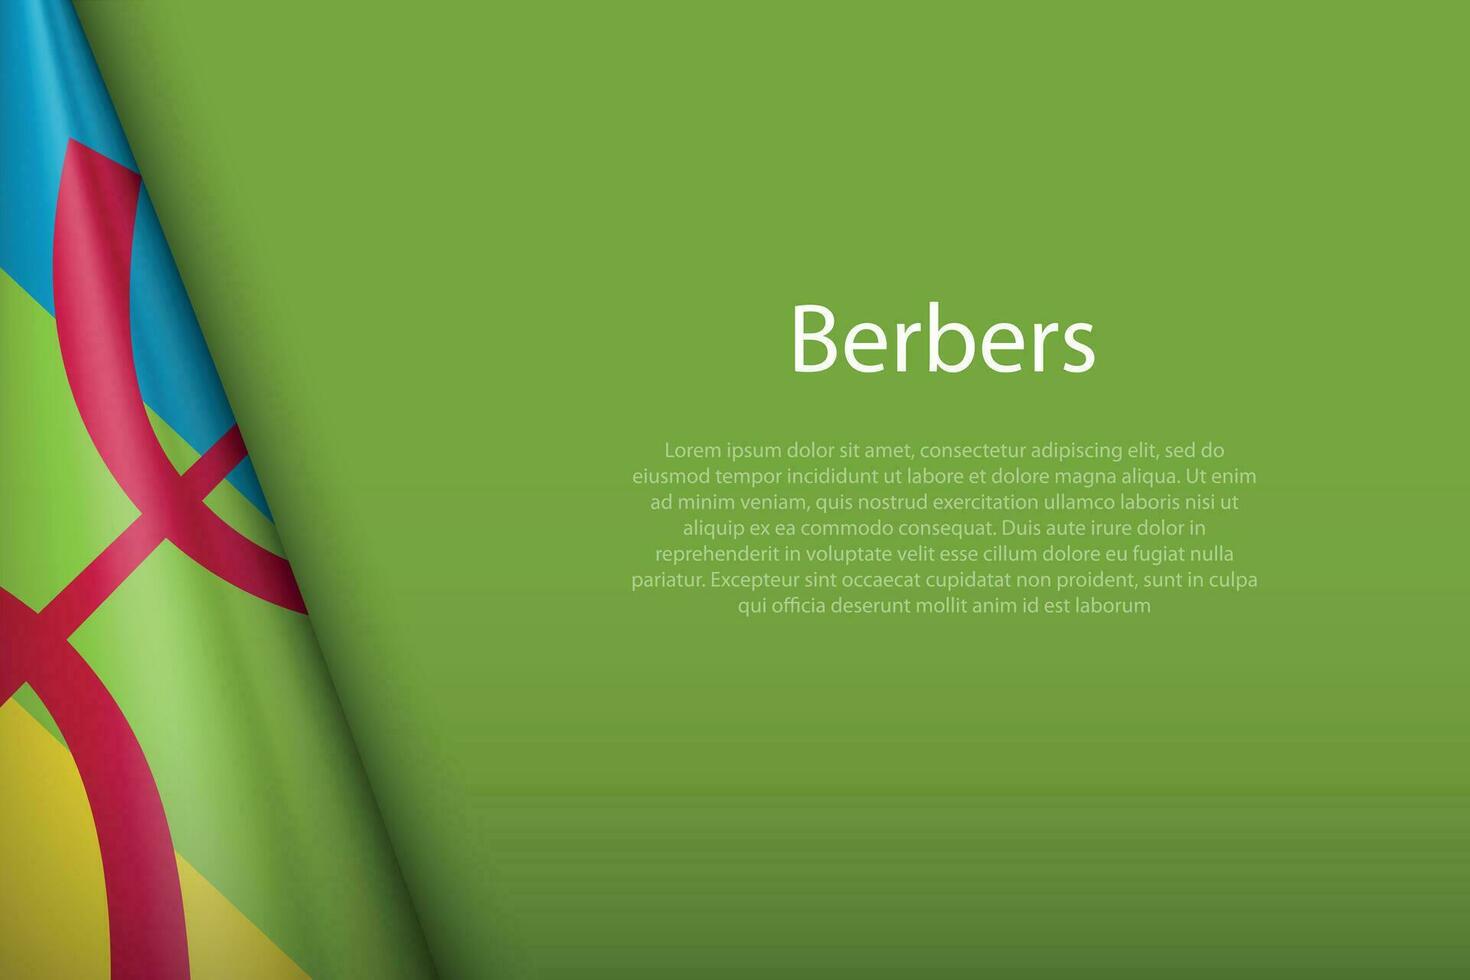 bandiera di berberi, etnico gruppo, isolato su sfondo con copyspace vettore